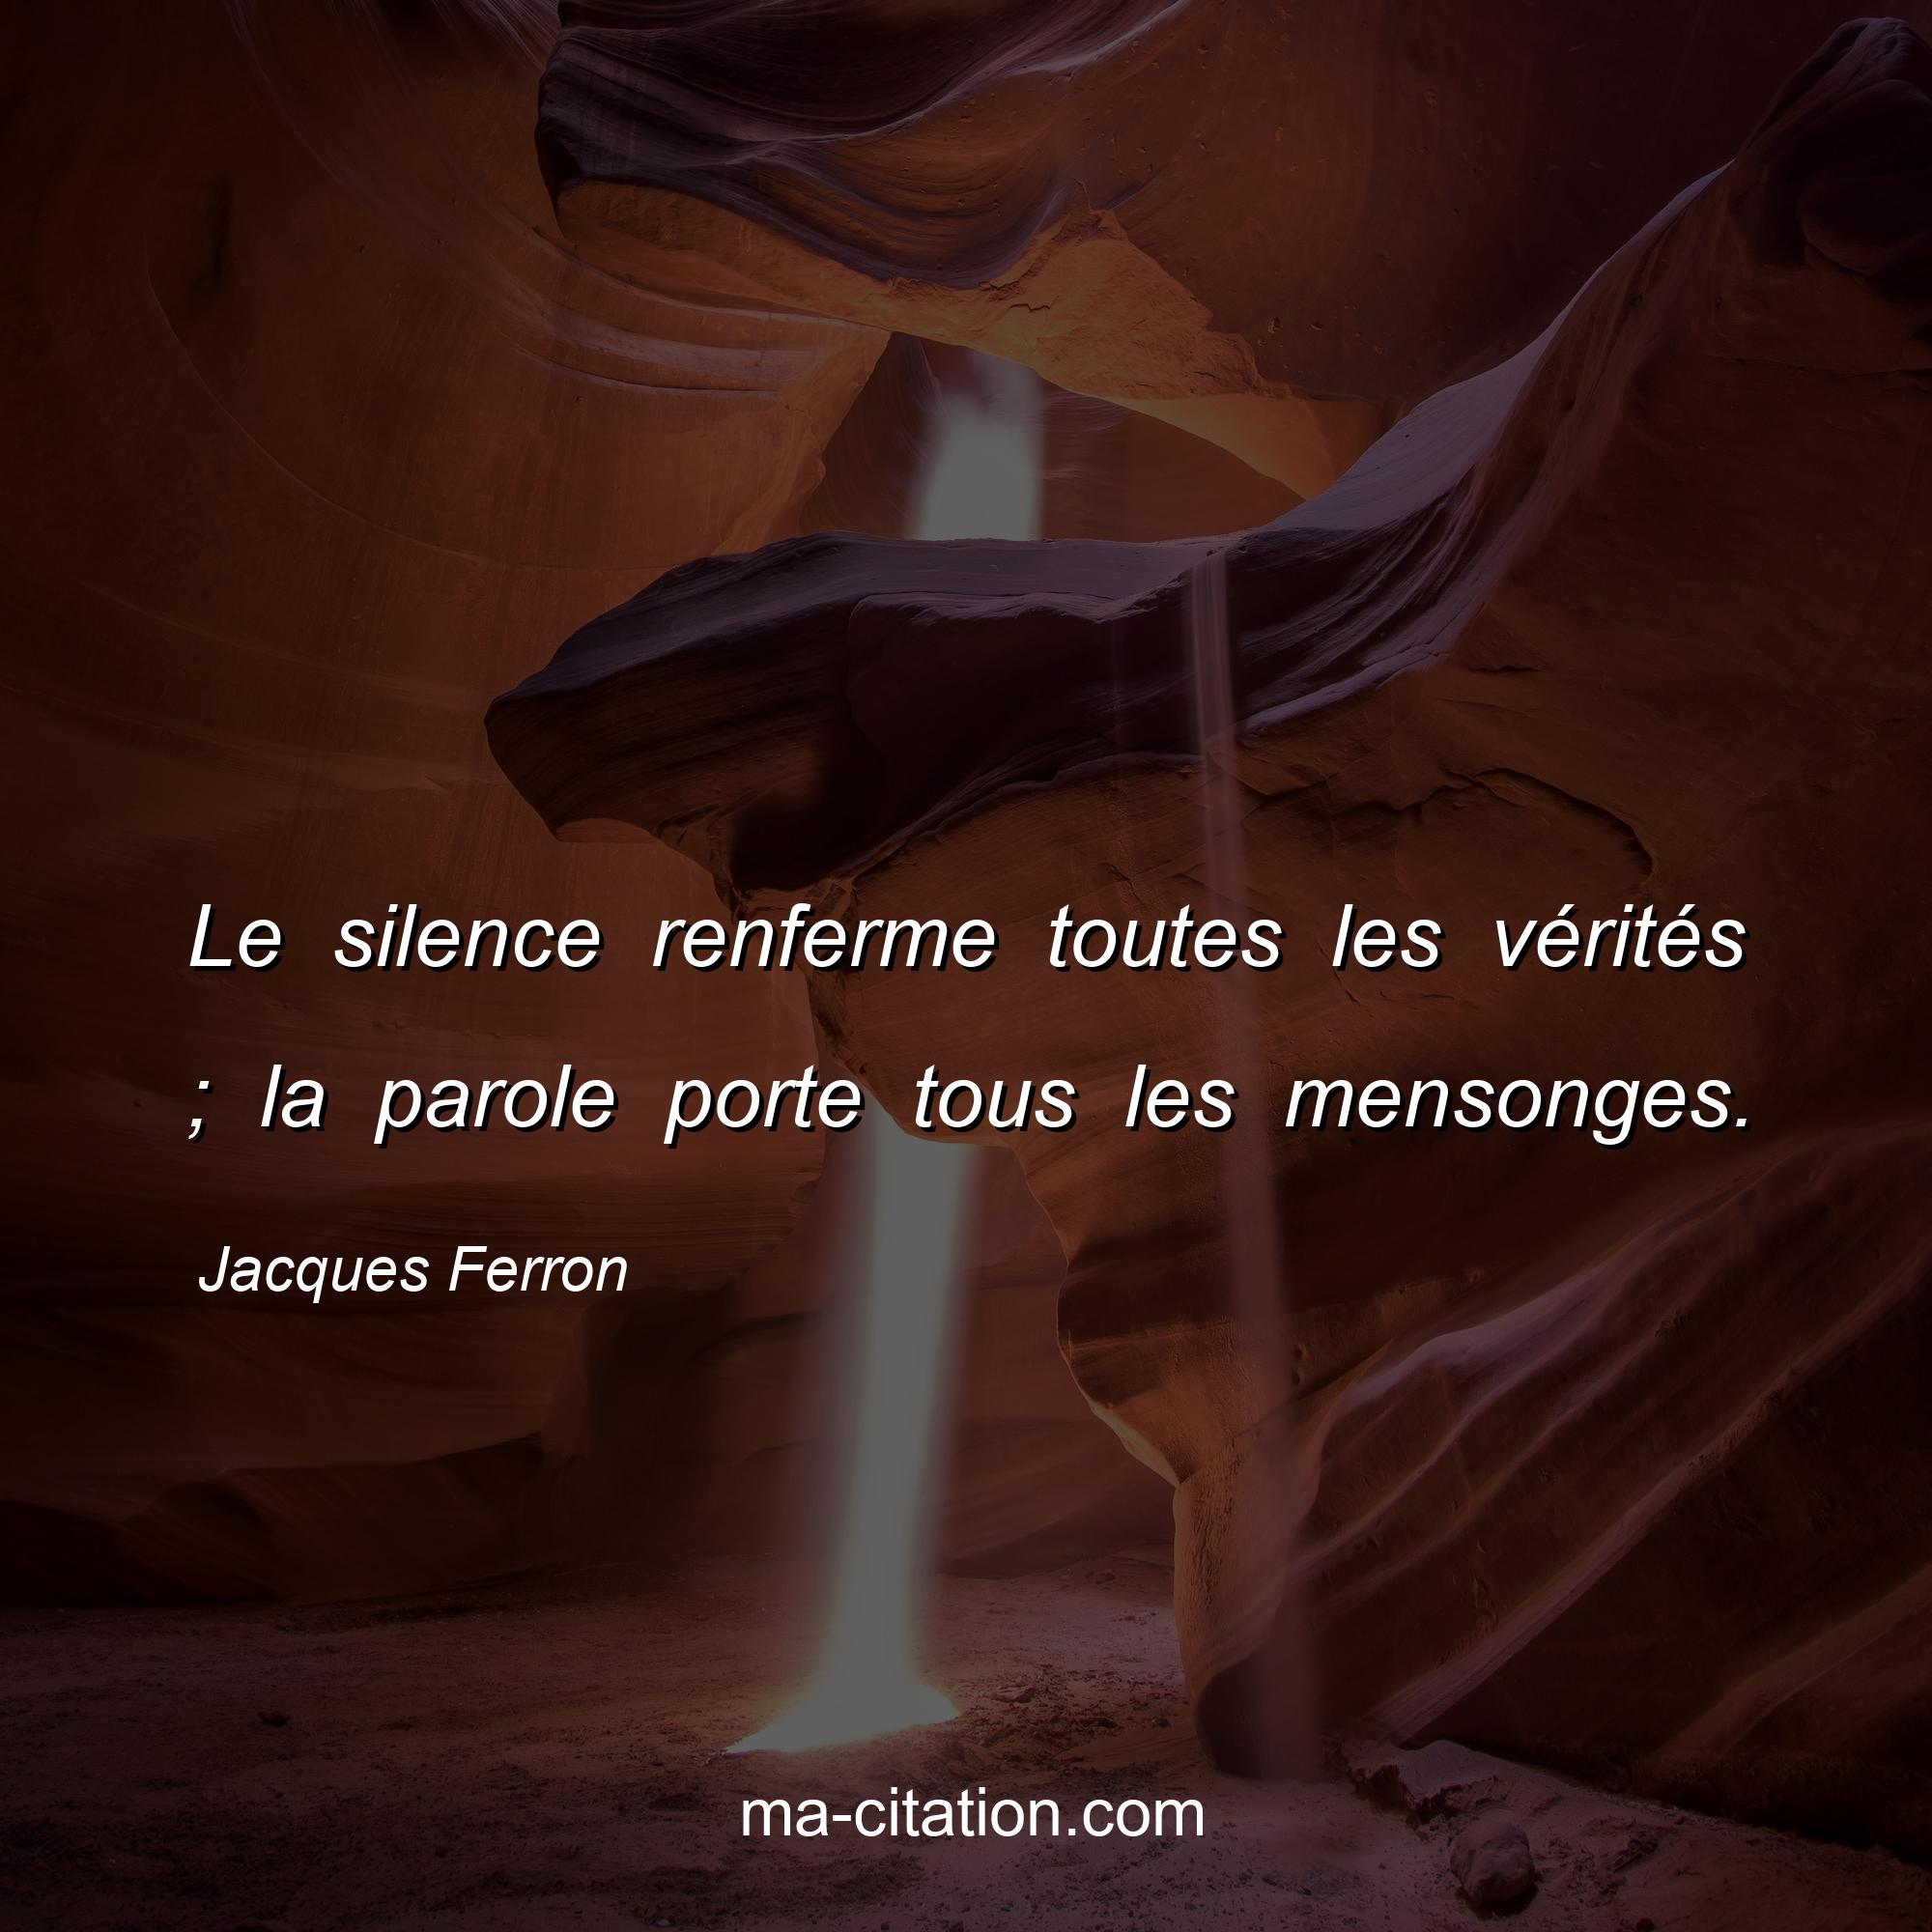 Jacques Ferron : Le silence renferme toutes les vérités ; la parole porte tous les mensonges.